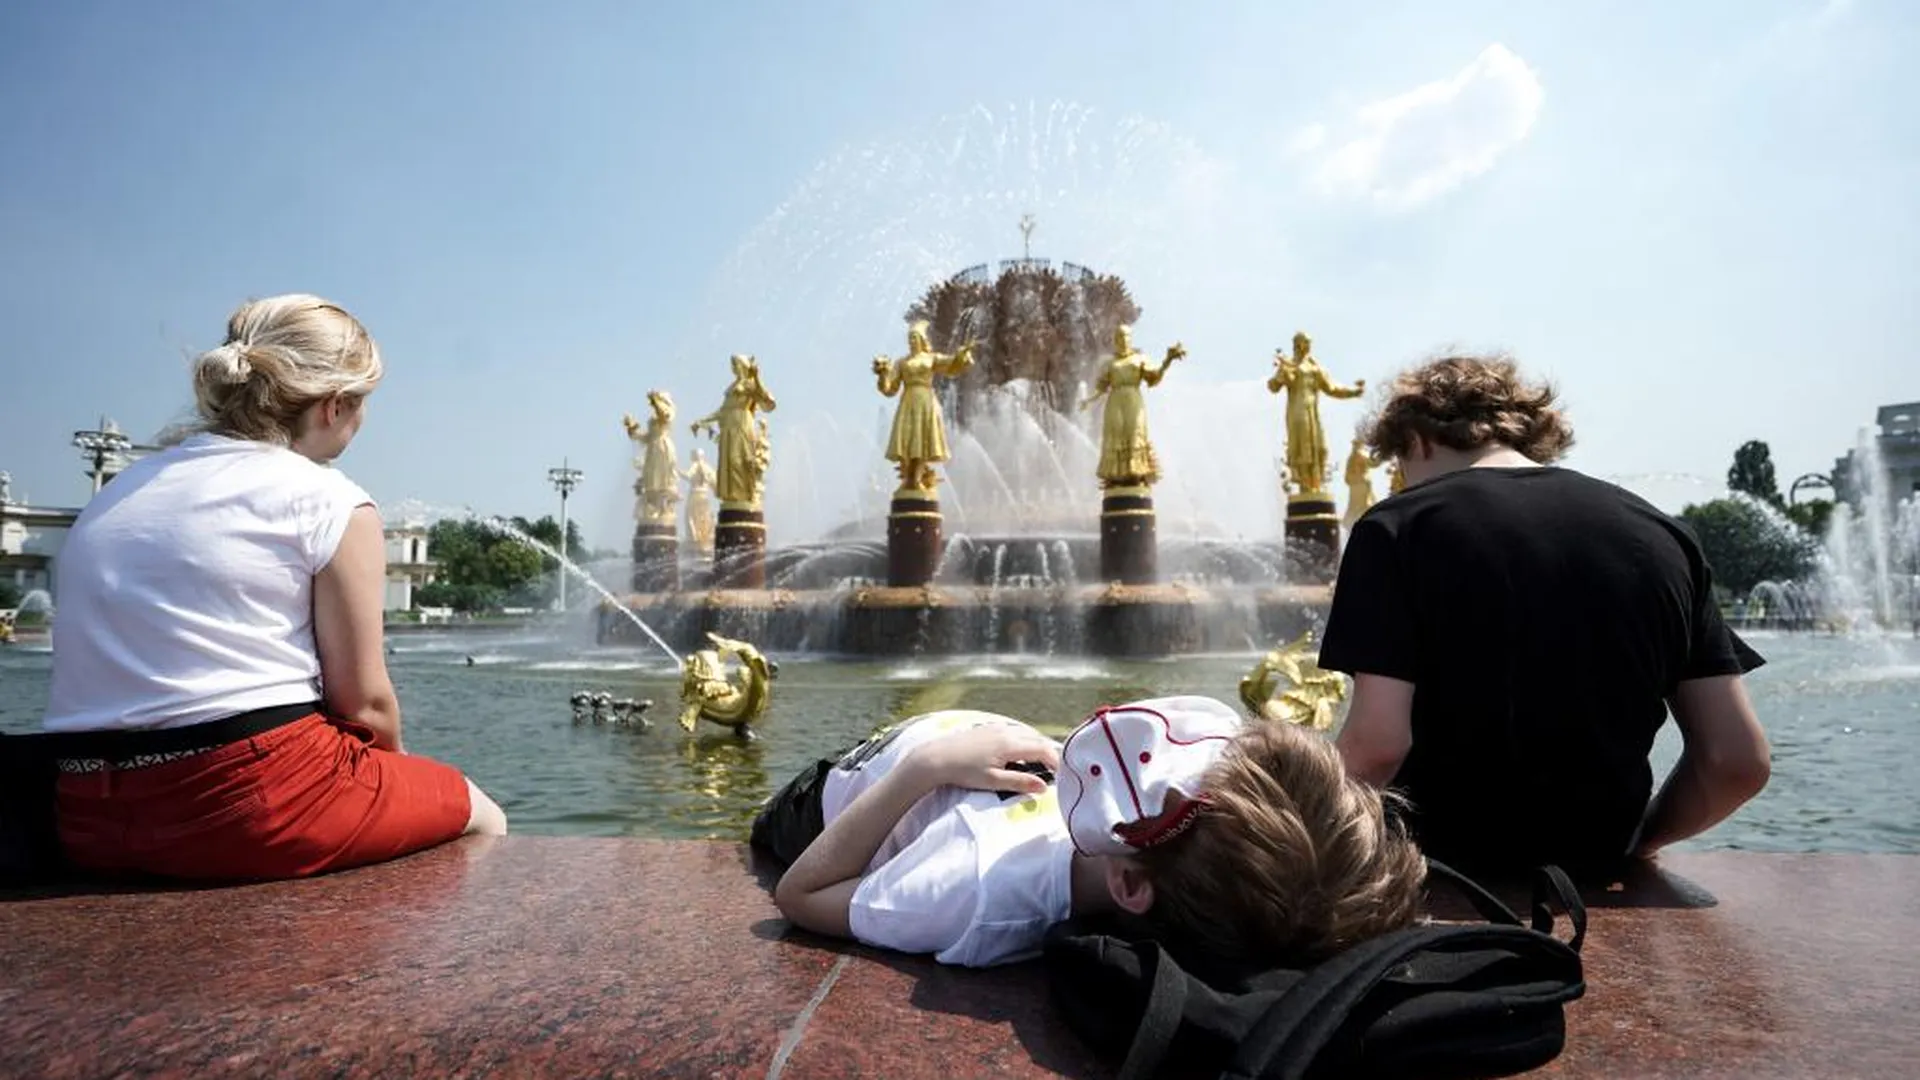 Температура летом в Москве может достигать плюс 35 градусов — профессор